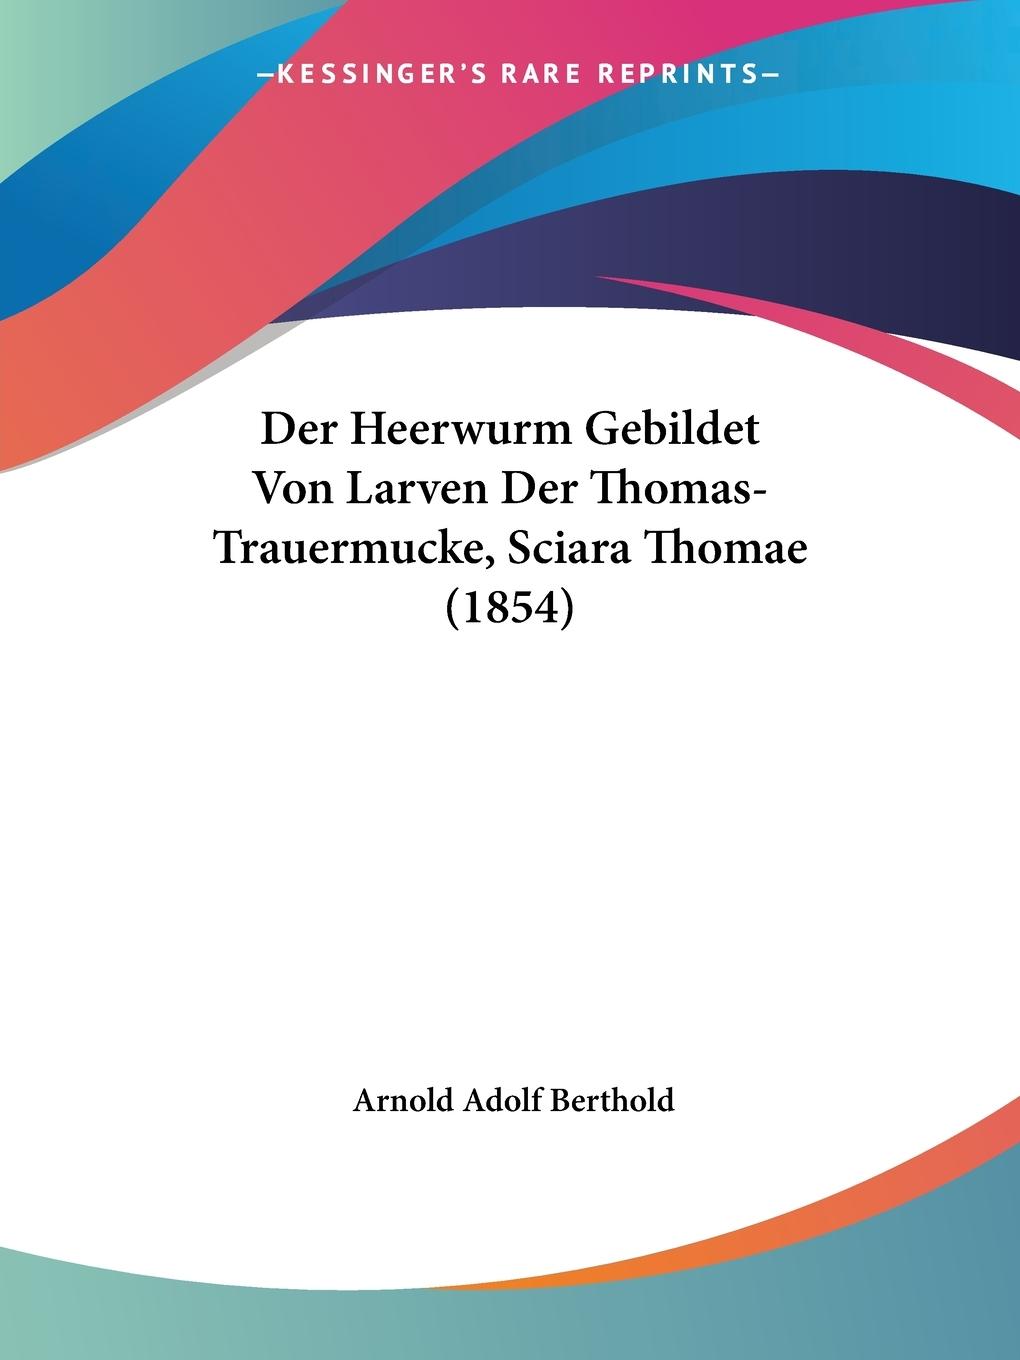 Der Heerwurm Gebildet Von Larven Der Thomas-Trauermucke, Sciara Thomae (1854) - Berthold, Arnold Adolf